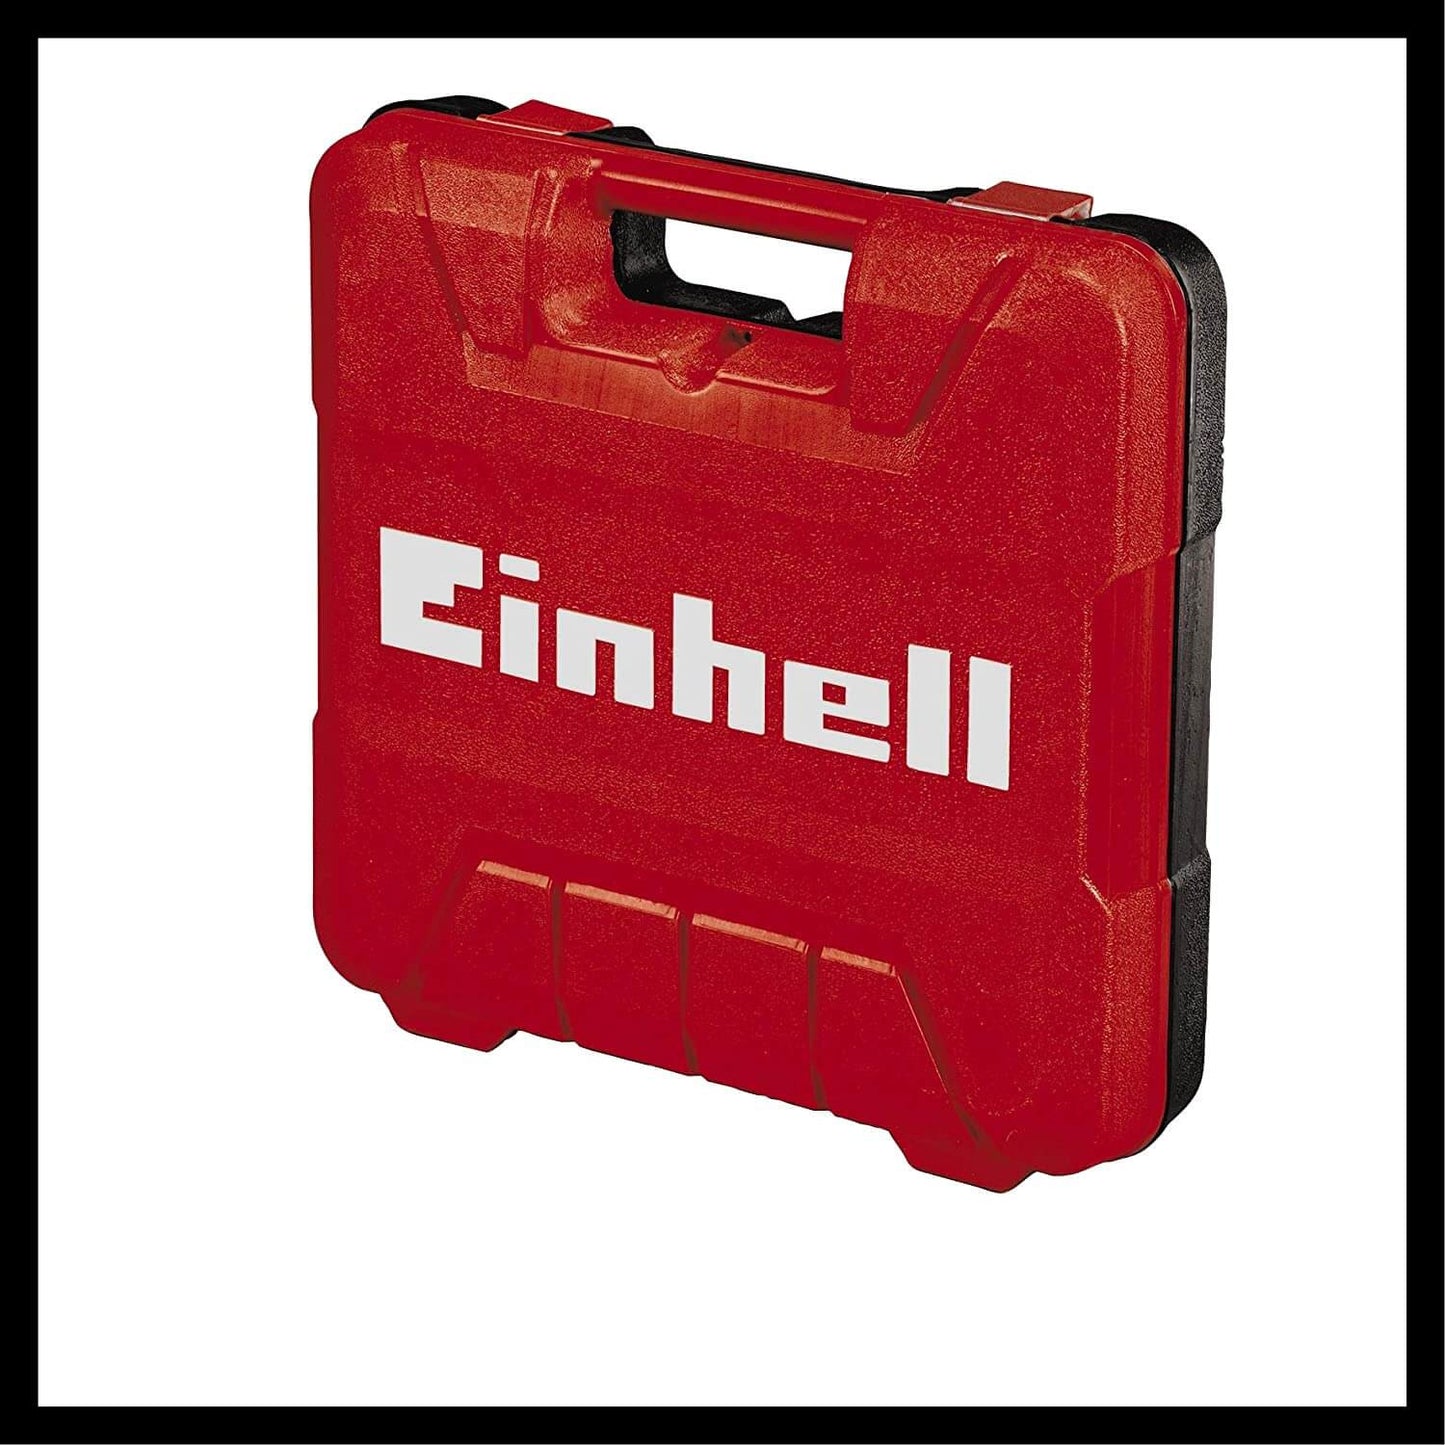 Agrafador de ar comprimido 2 em 1 com agrafos e mala de transporte Einhell TC-PN 50 EINHELL - 2